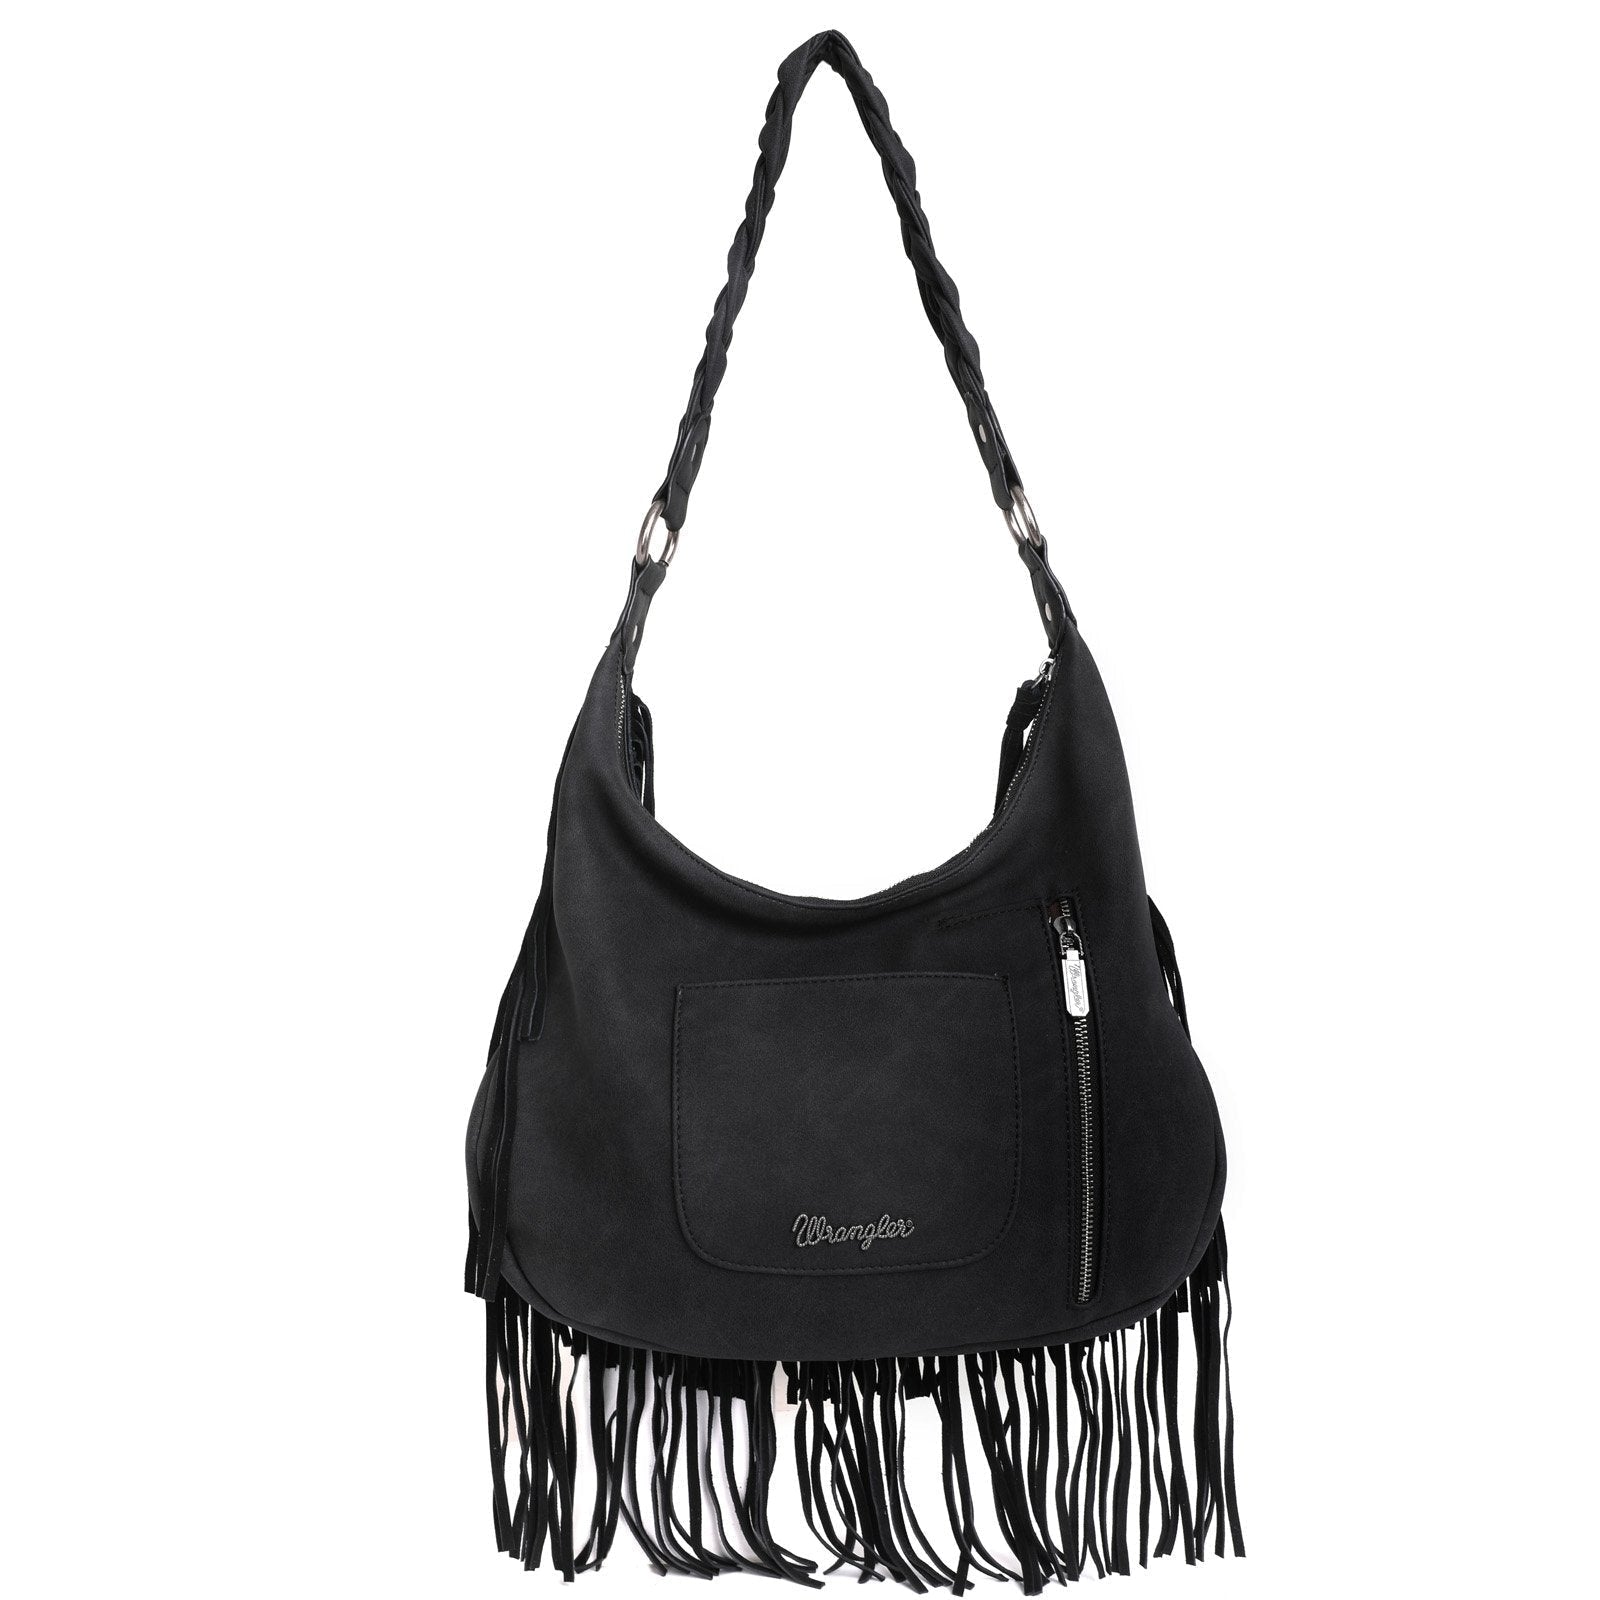 WG11-918 BK-1 Wrangler leather fringe hobo purse back- Black